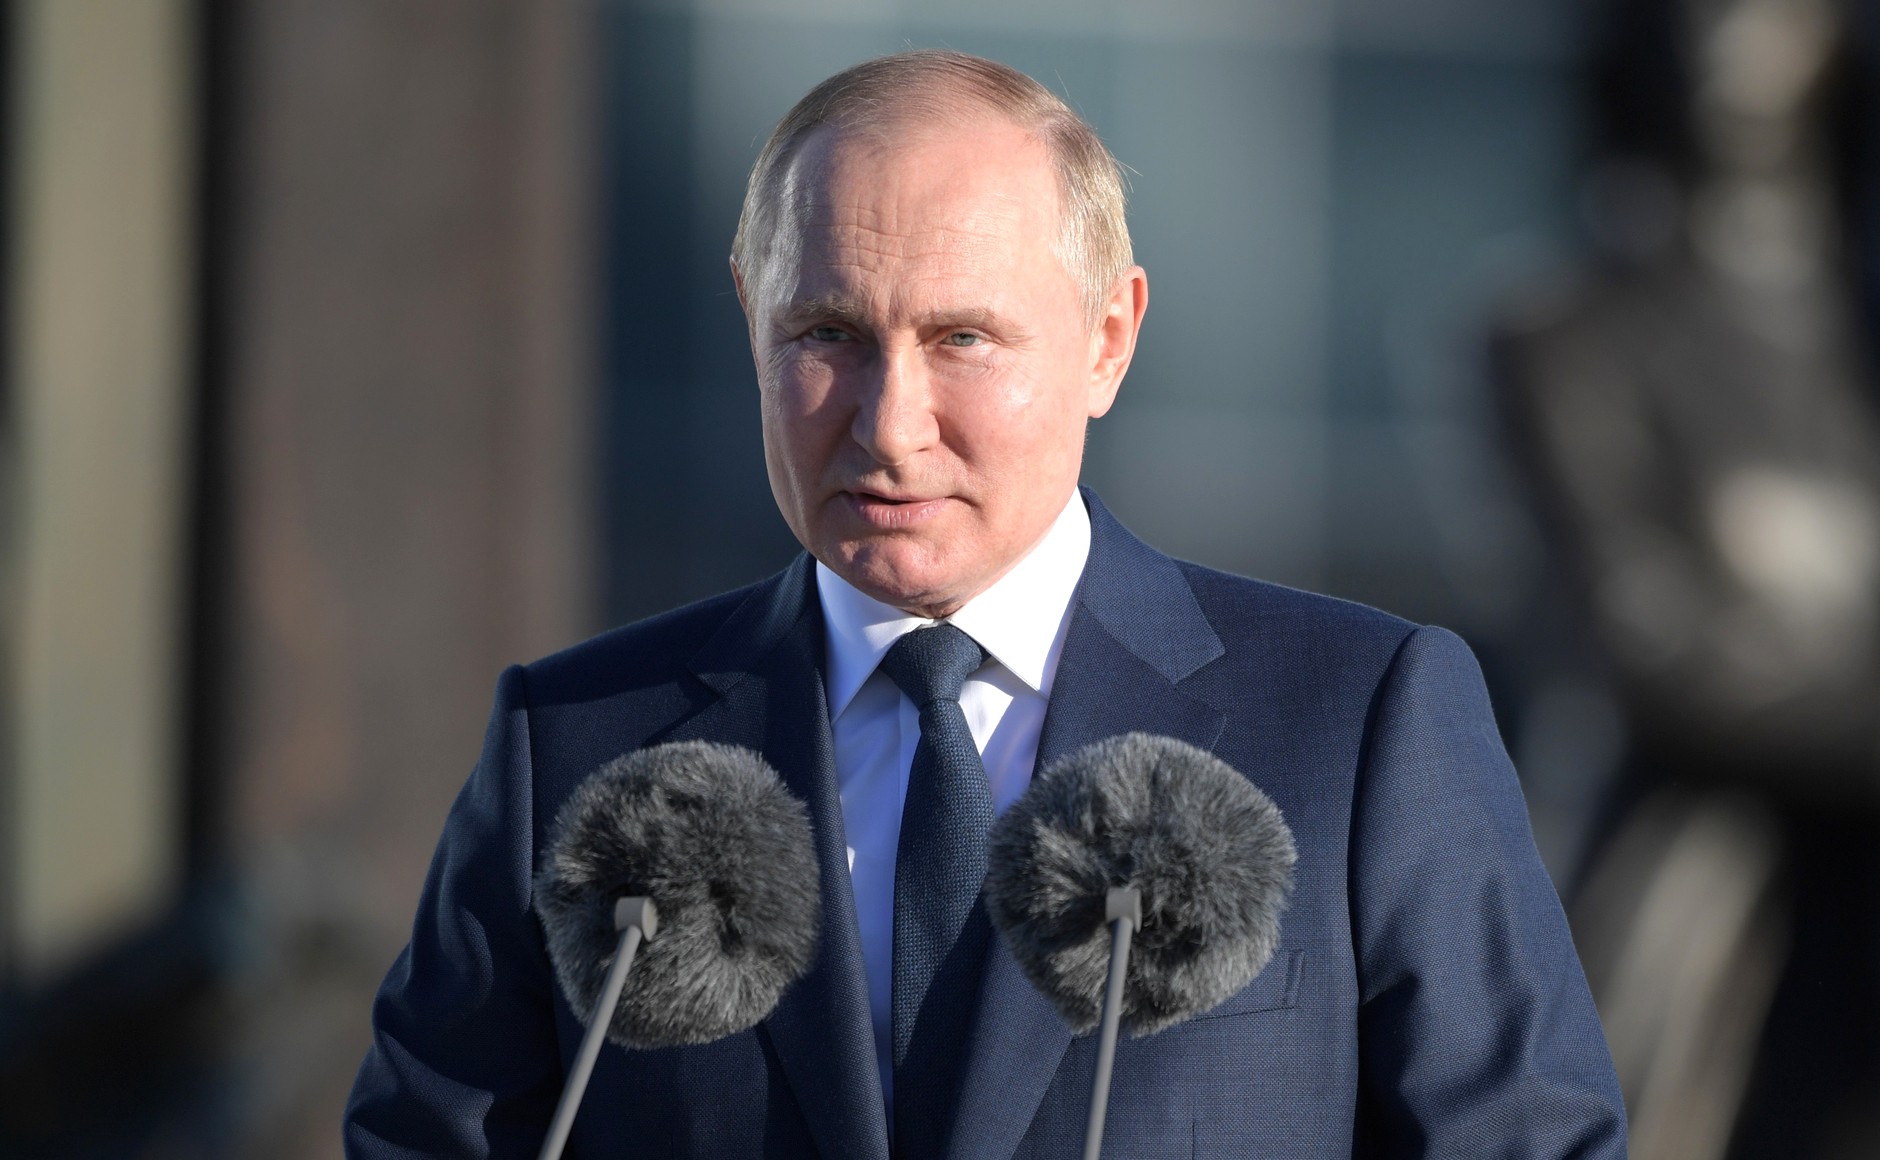 Putin Image kremlin.ru Wikimedia Commons